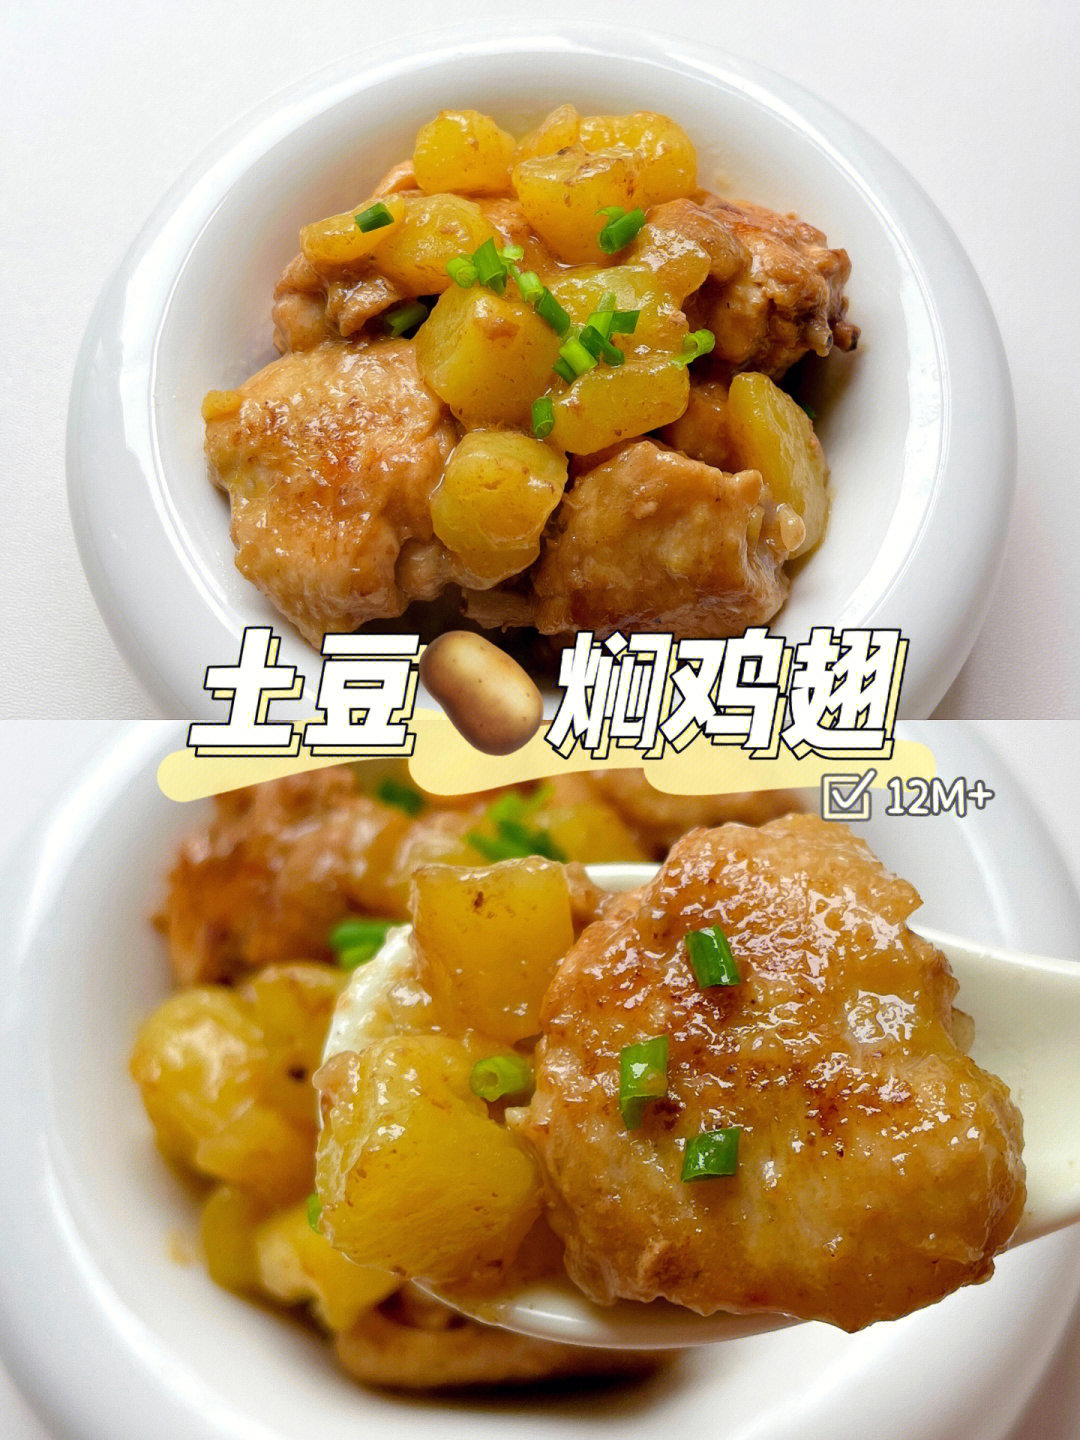 12m宝宝辅食土豆焖鸡翅软嫩好吃简单